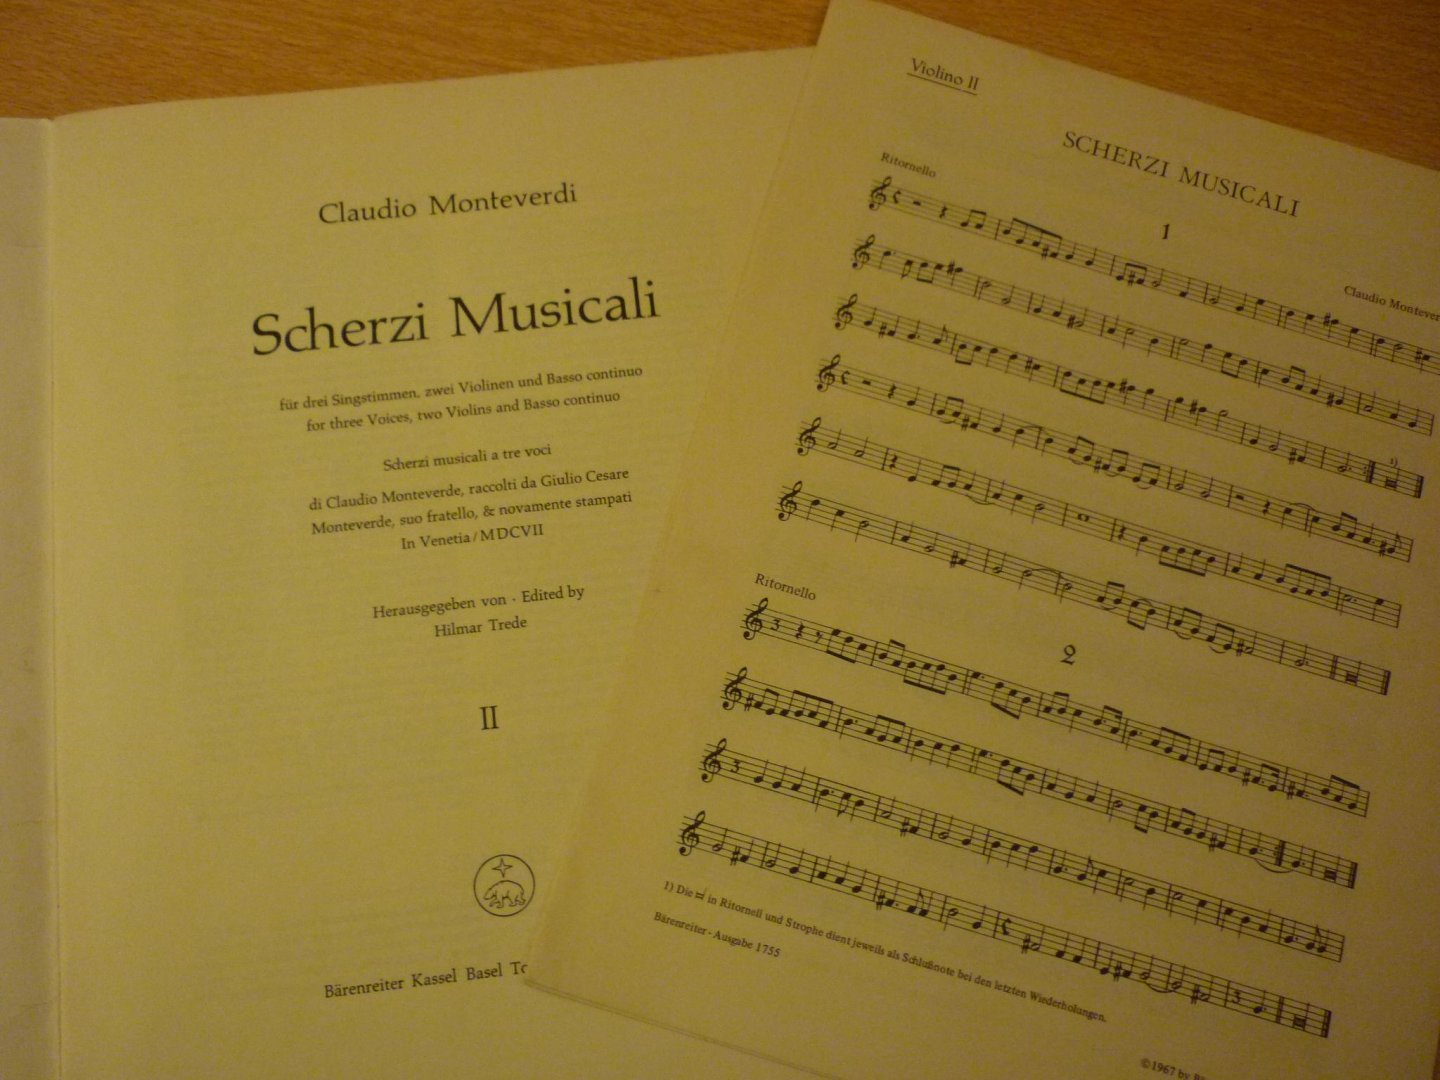 Monteverdi; Claudio - Scherzi Musicali; Deel II; Fur drei Singstimmen; 2 violen; basso continuo (herausgegeben von Hilmar Trede)